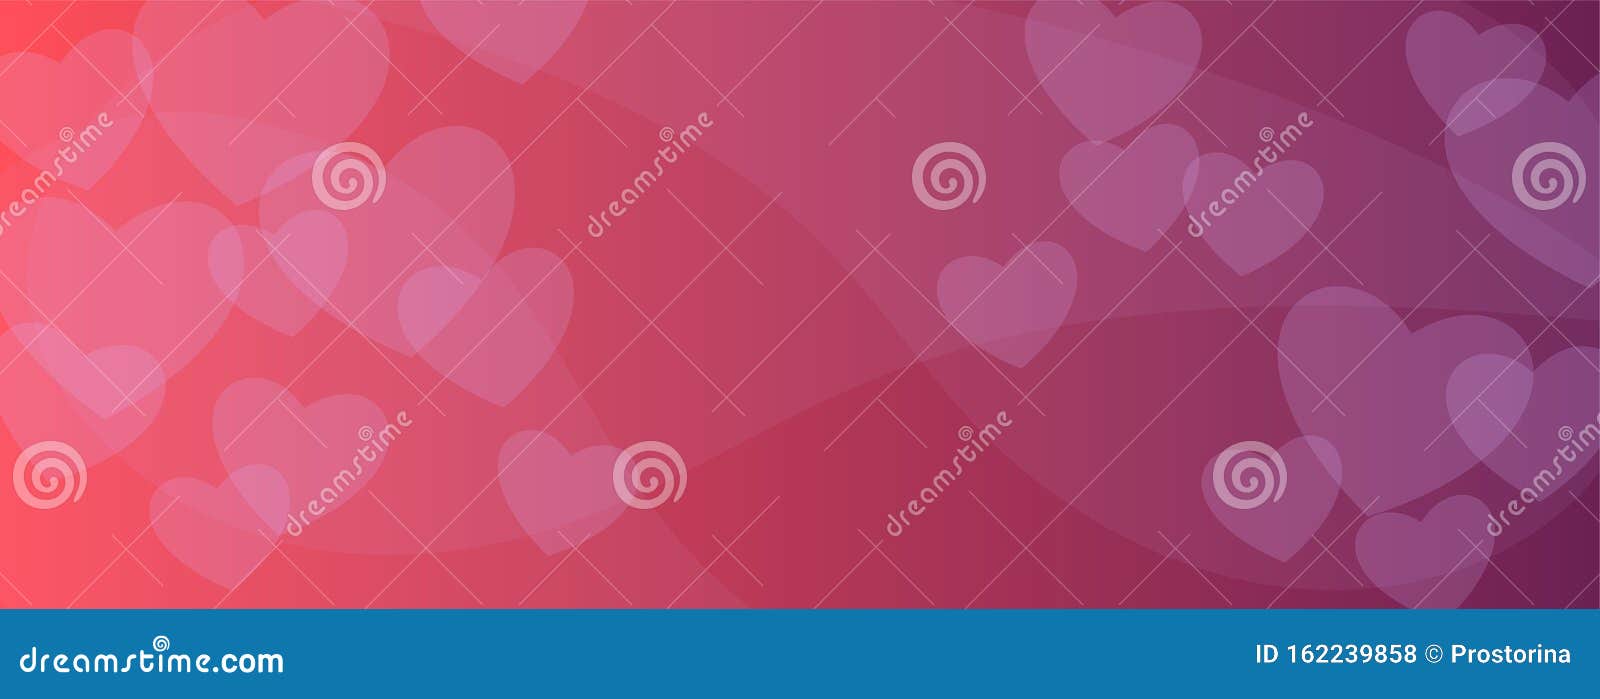 情人节摘要红色背景爱情 婚礼横幅 海报模板2月14日向量例证 插画包括有情人节摘要红色背景 2月14日 162239858